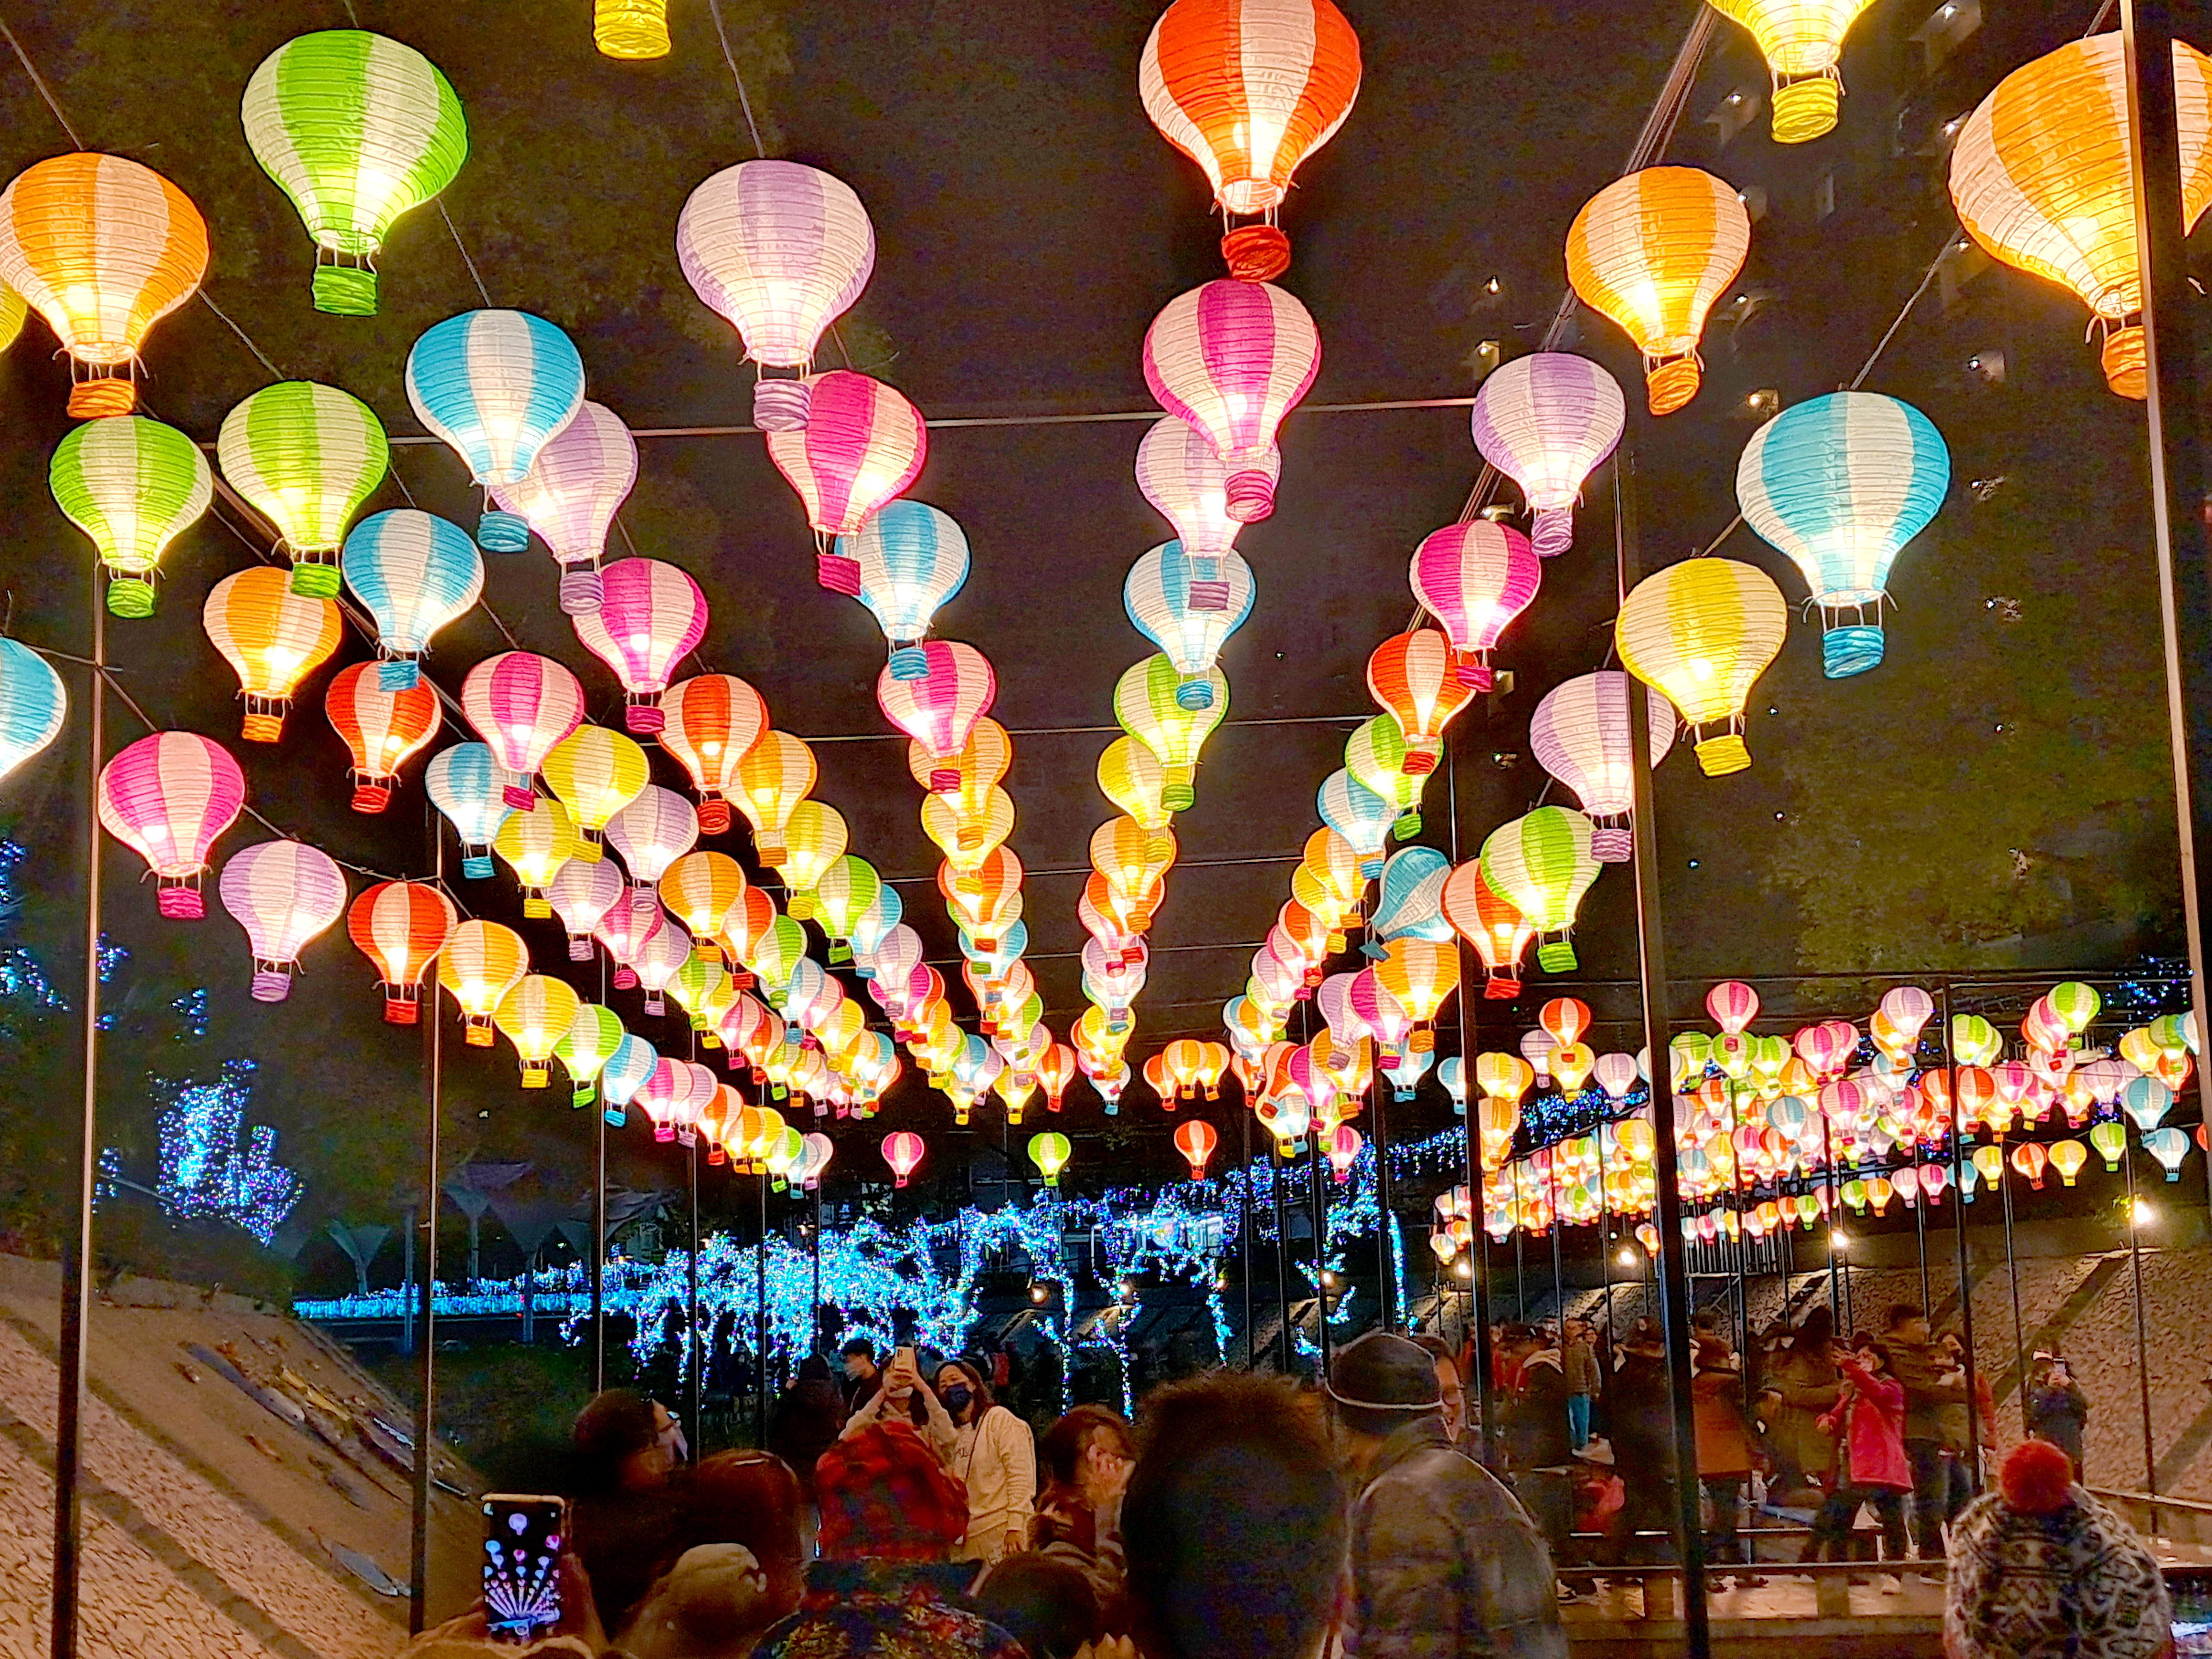 中港光雕展內繽紛多彩的熱氣球燈飾象徵愛情降臨。圖/取自新北市政府水利局網站 